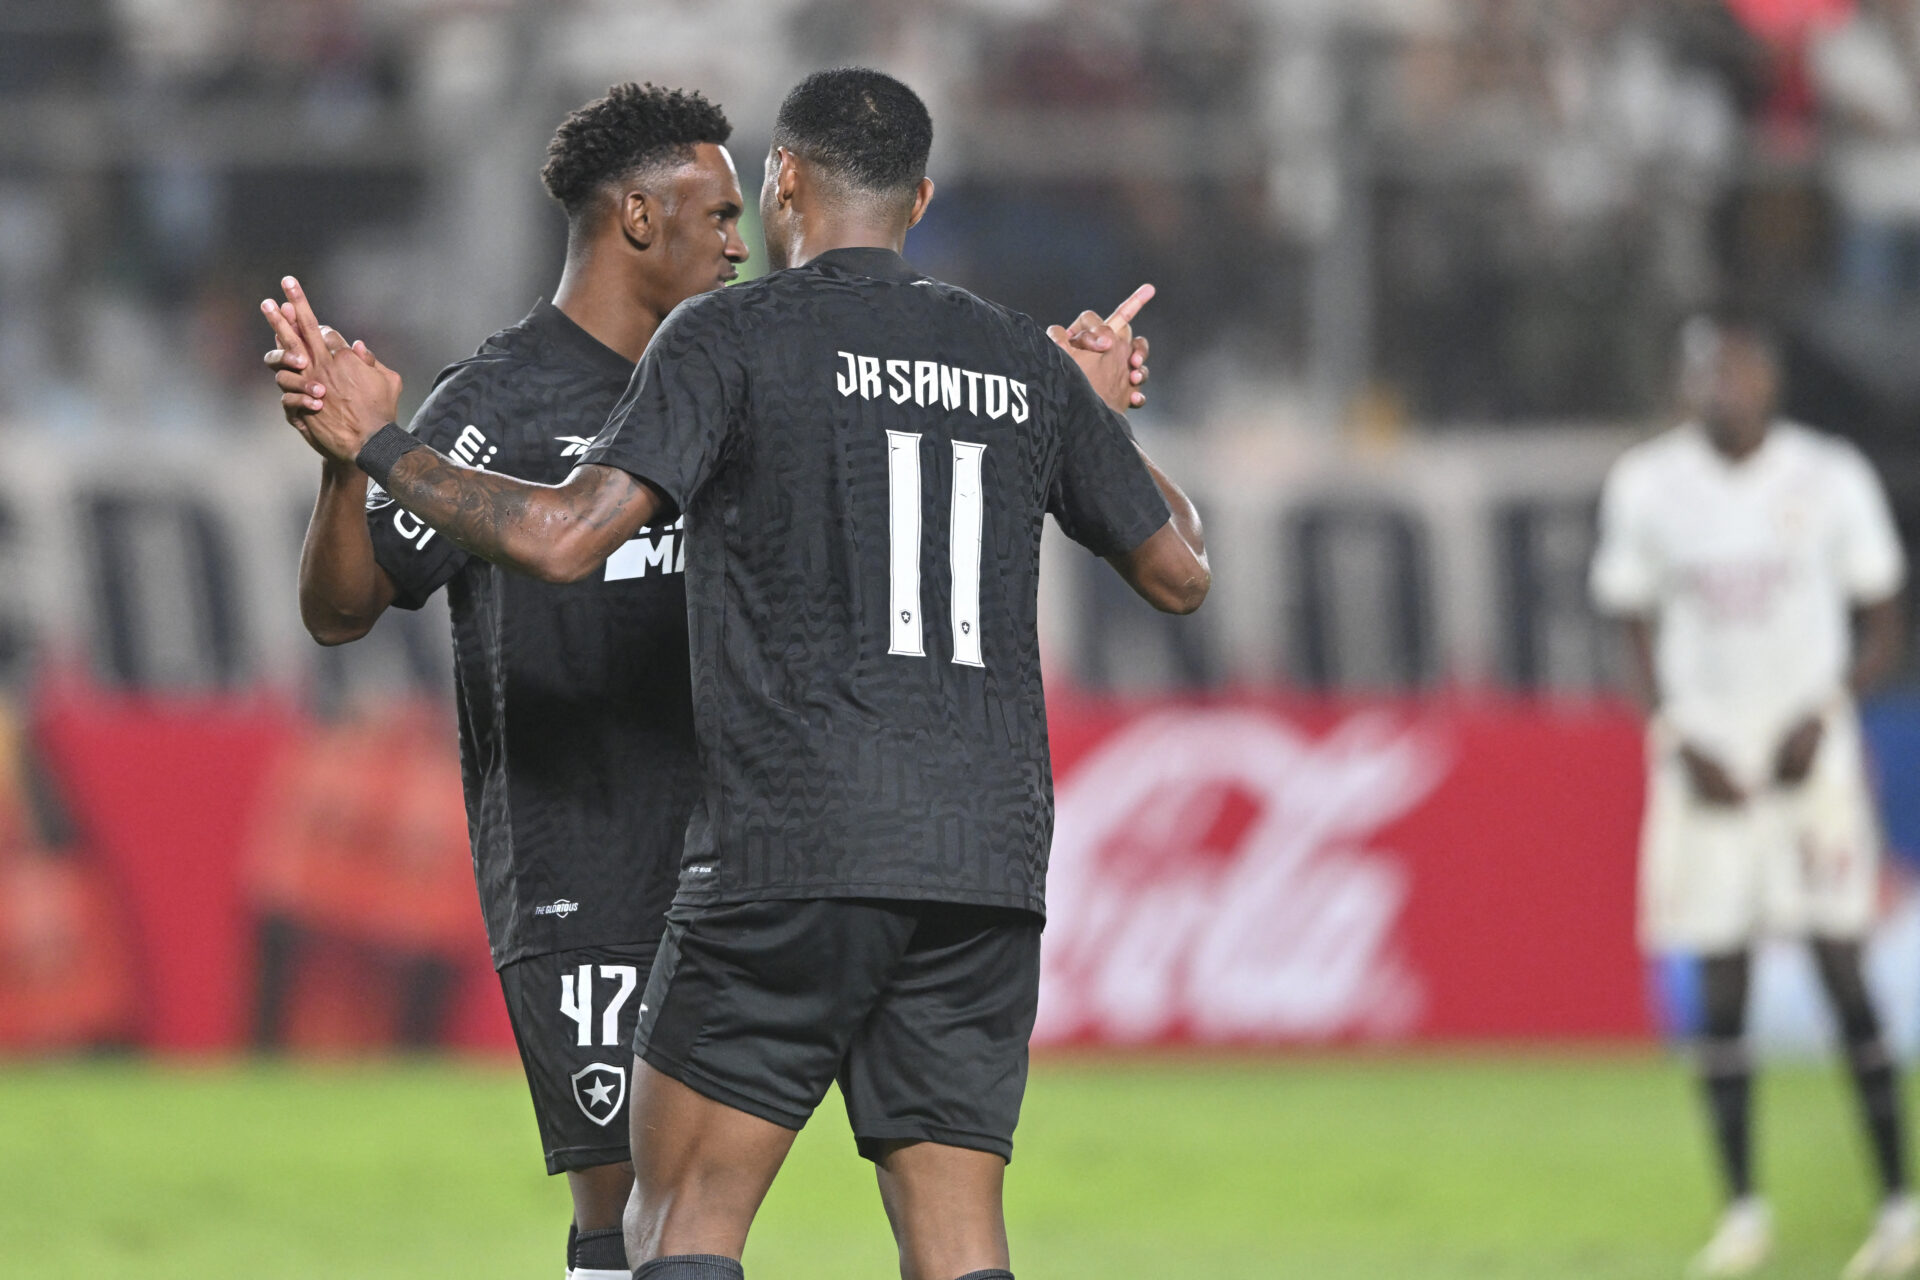 AO VIVO: Universitario x Botafogo pela Copa Libertadores